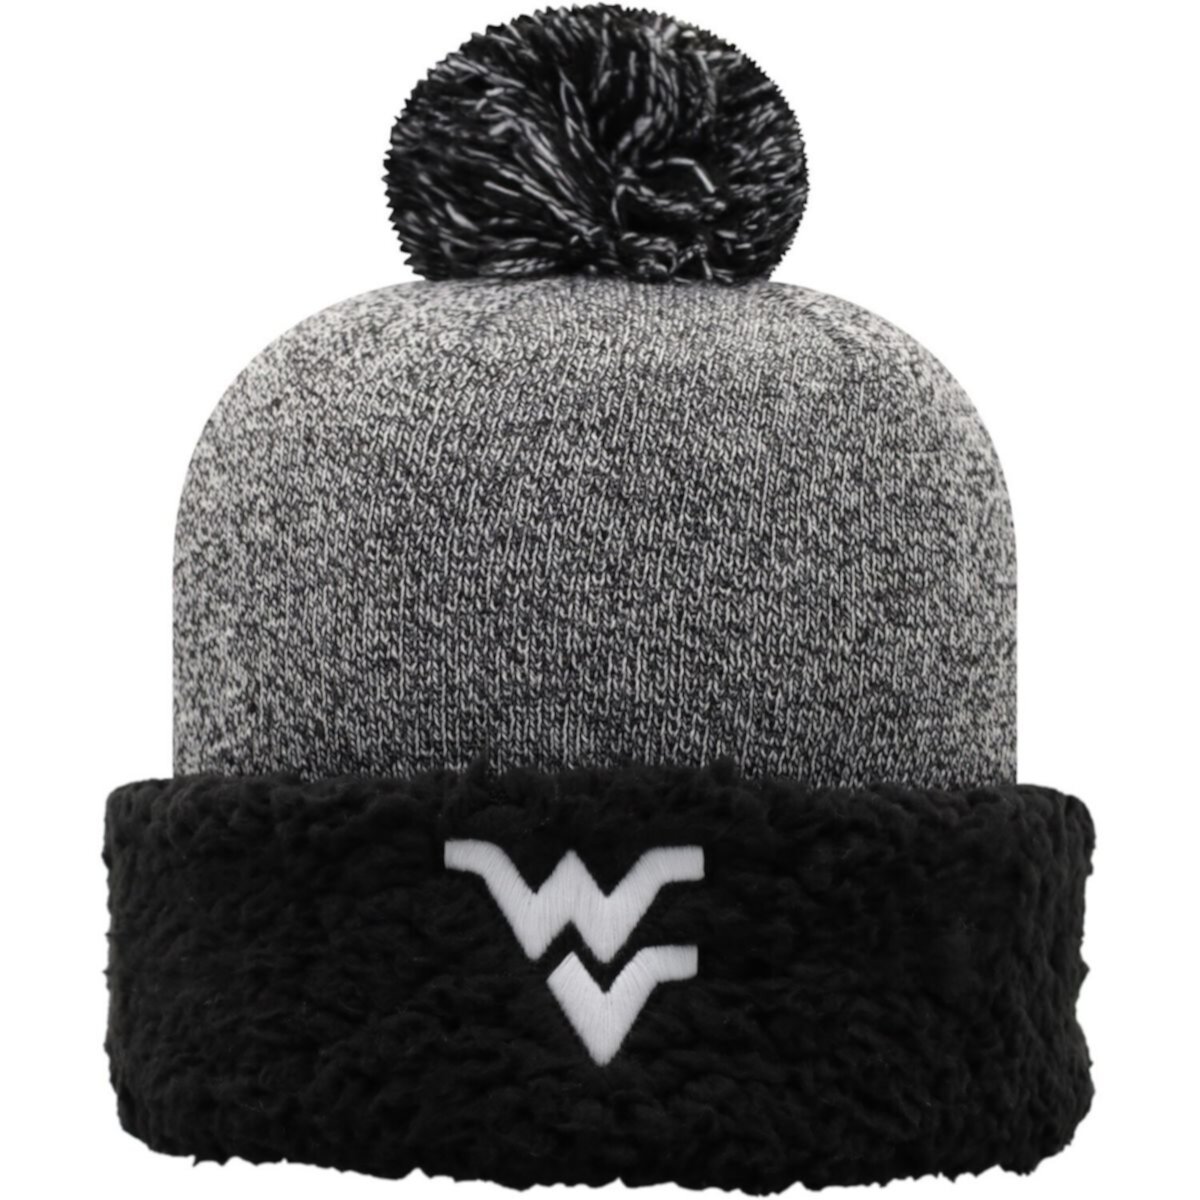 Женская черная вязаная шапка с манжетами и помпоном Top of the World, альпинисты Западной Вирджинии Top of the World